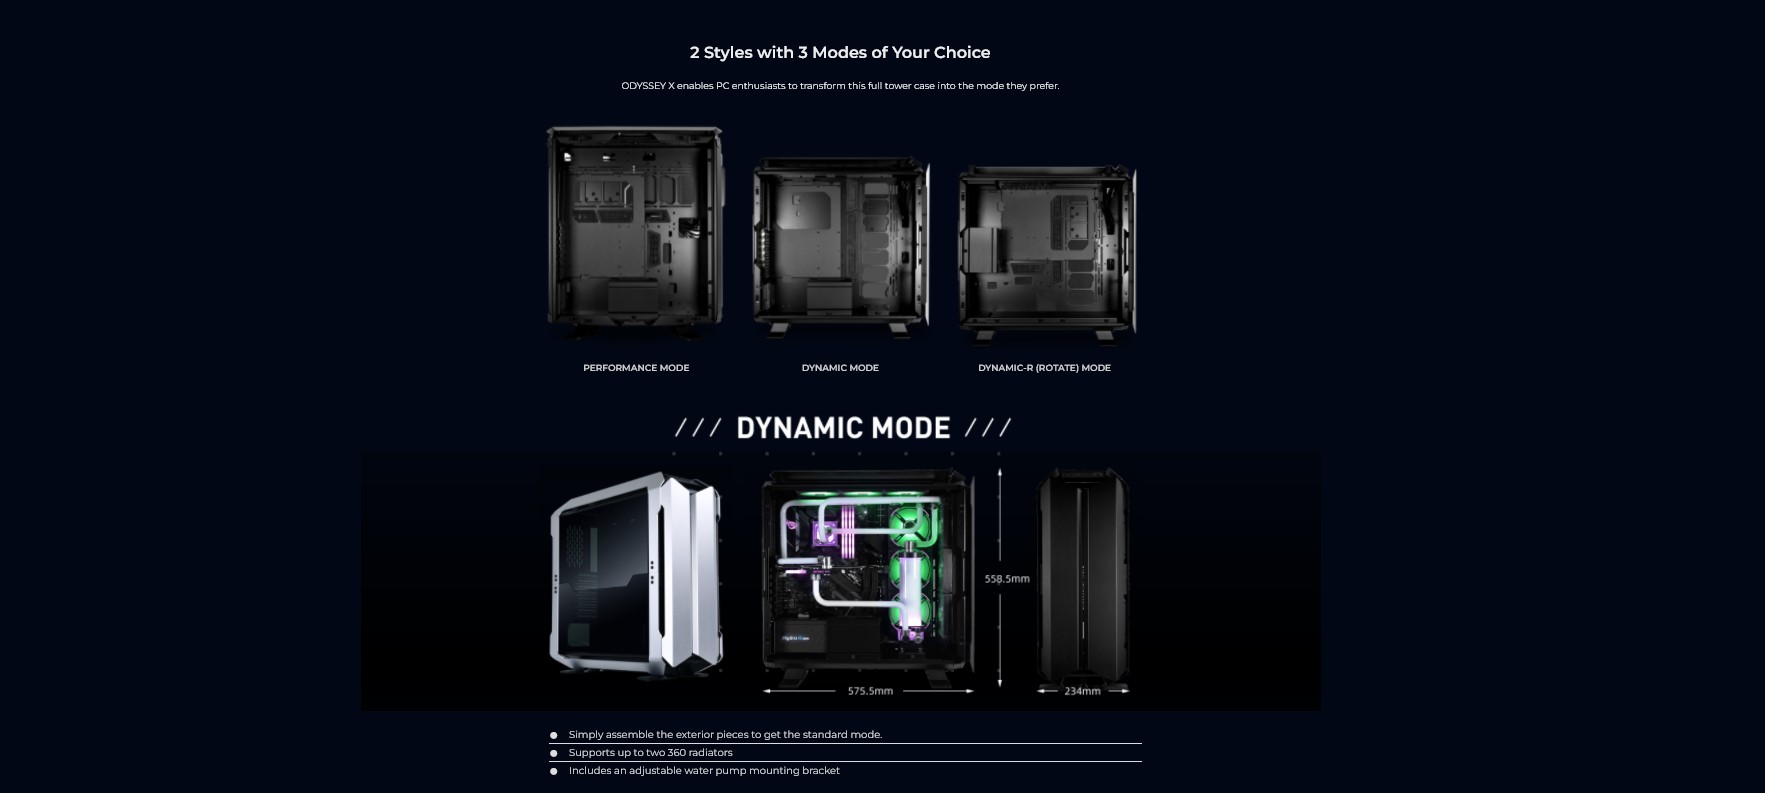 Vỏ Case LIAN-LI Odyssey X Black ( Full Tower/Màu Đen)